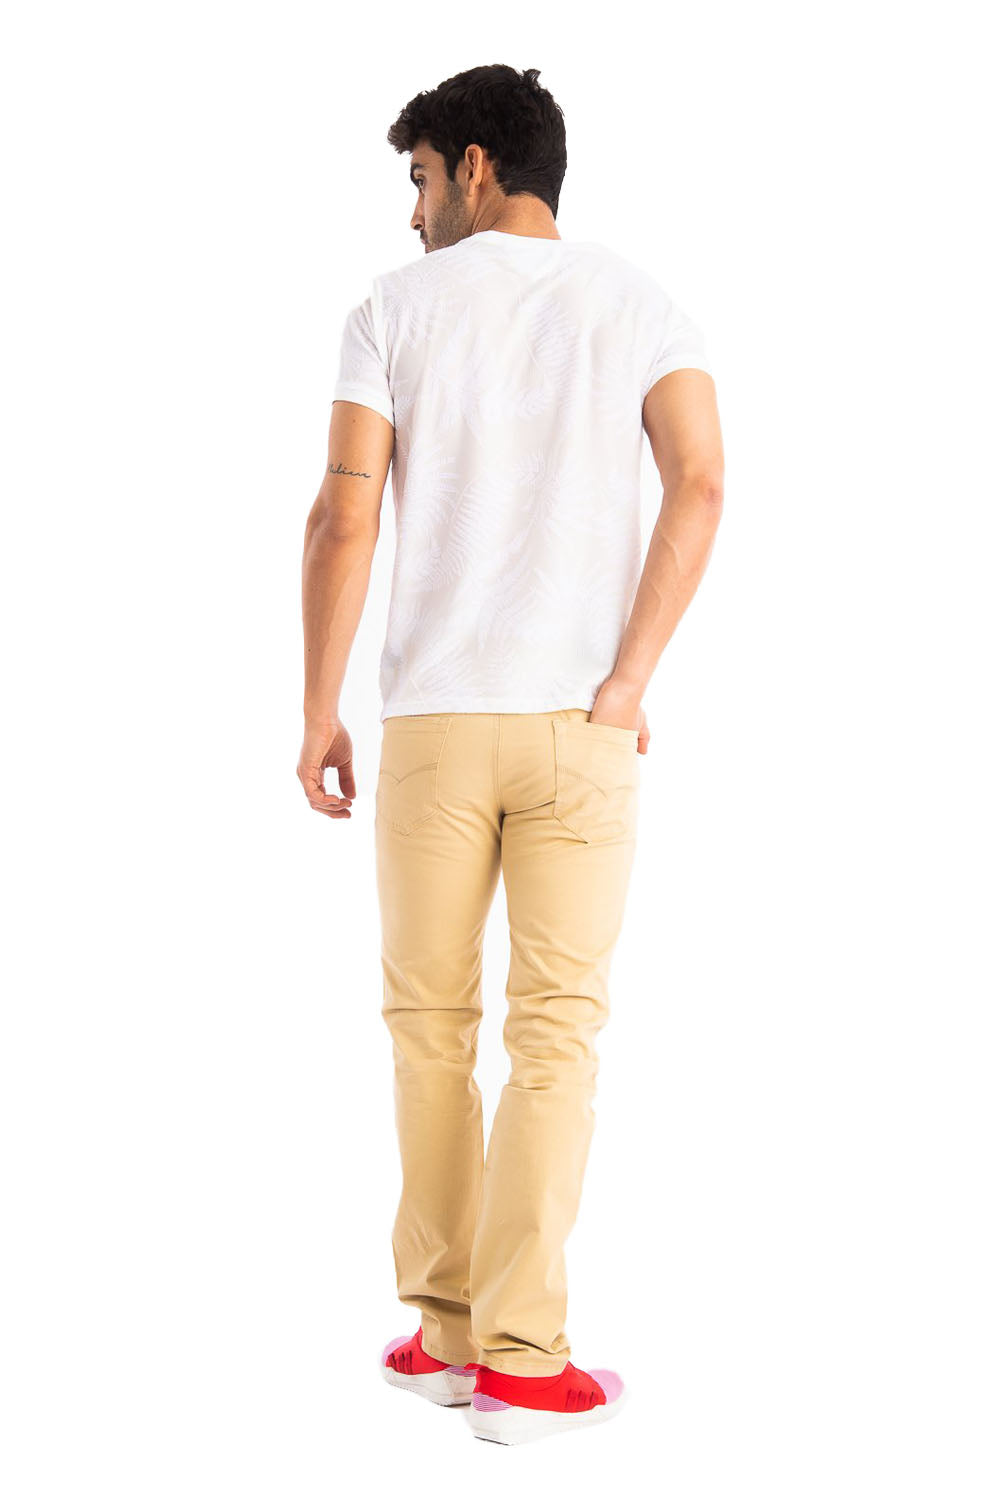 BARABAS Men's Khaki Relaxed Fit Denim Jeans Pants CP4001 Beige